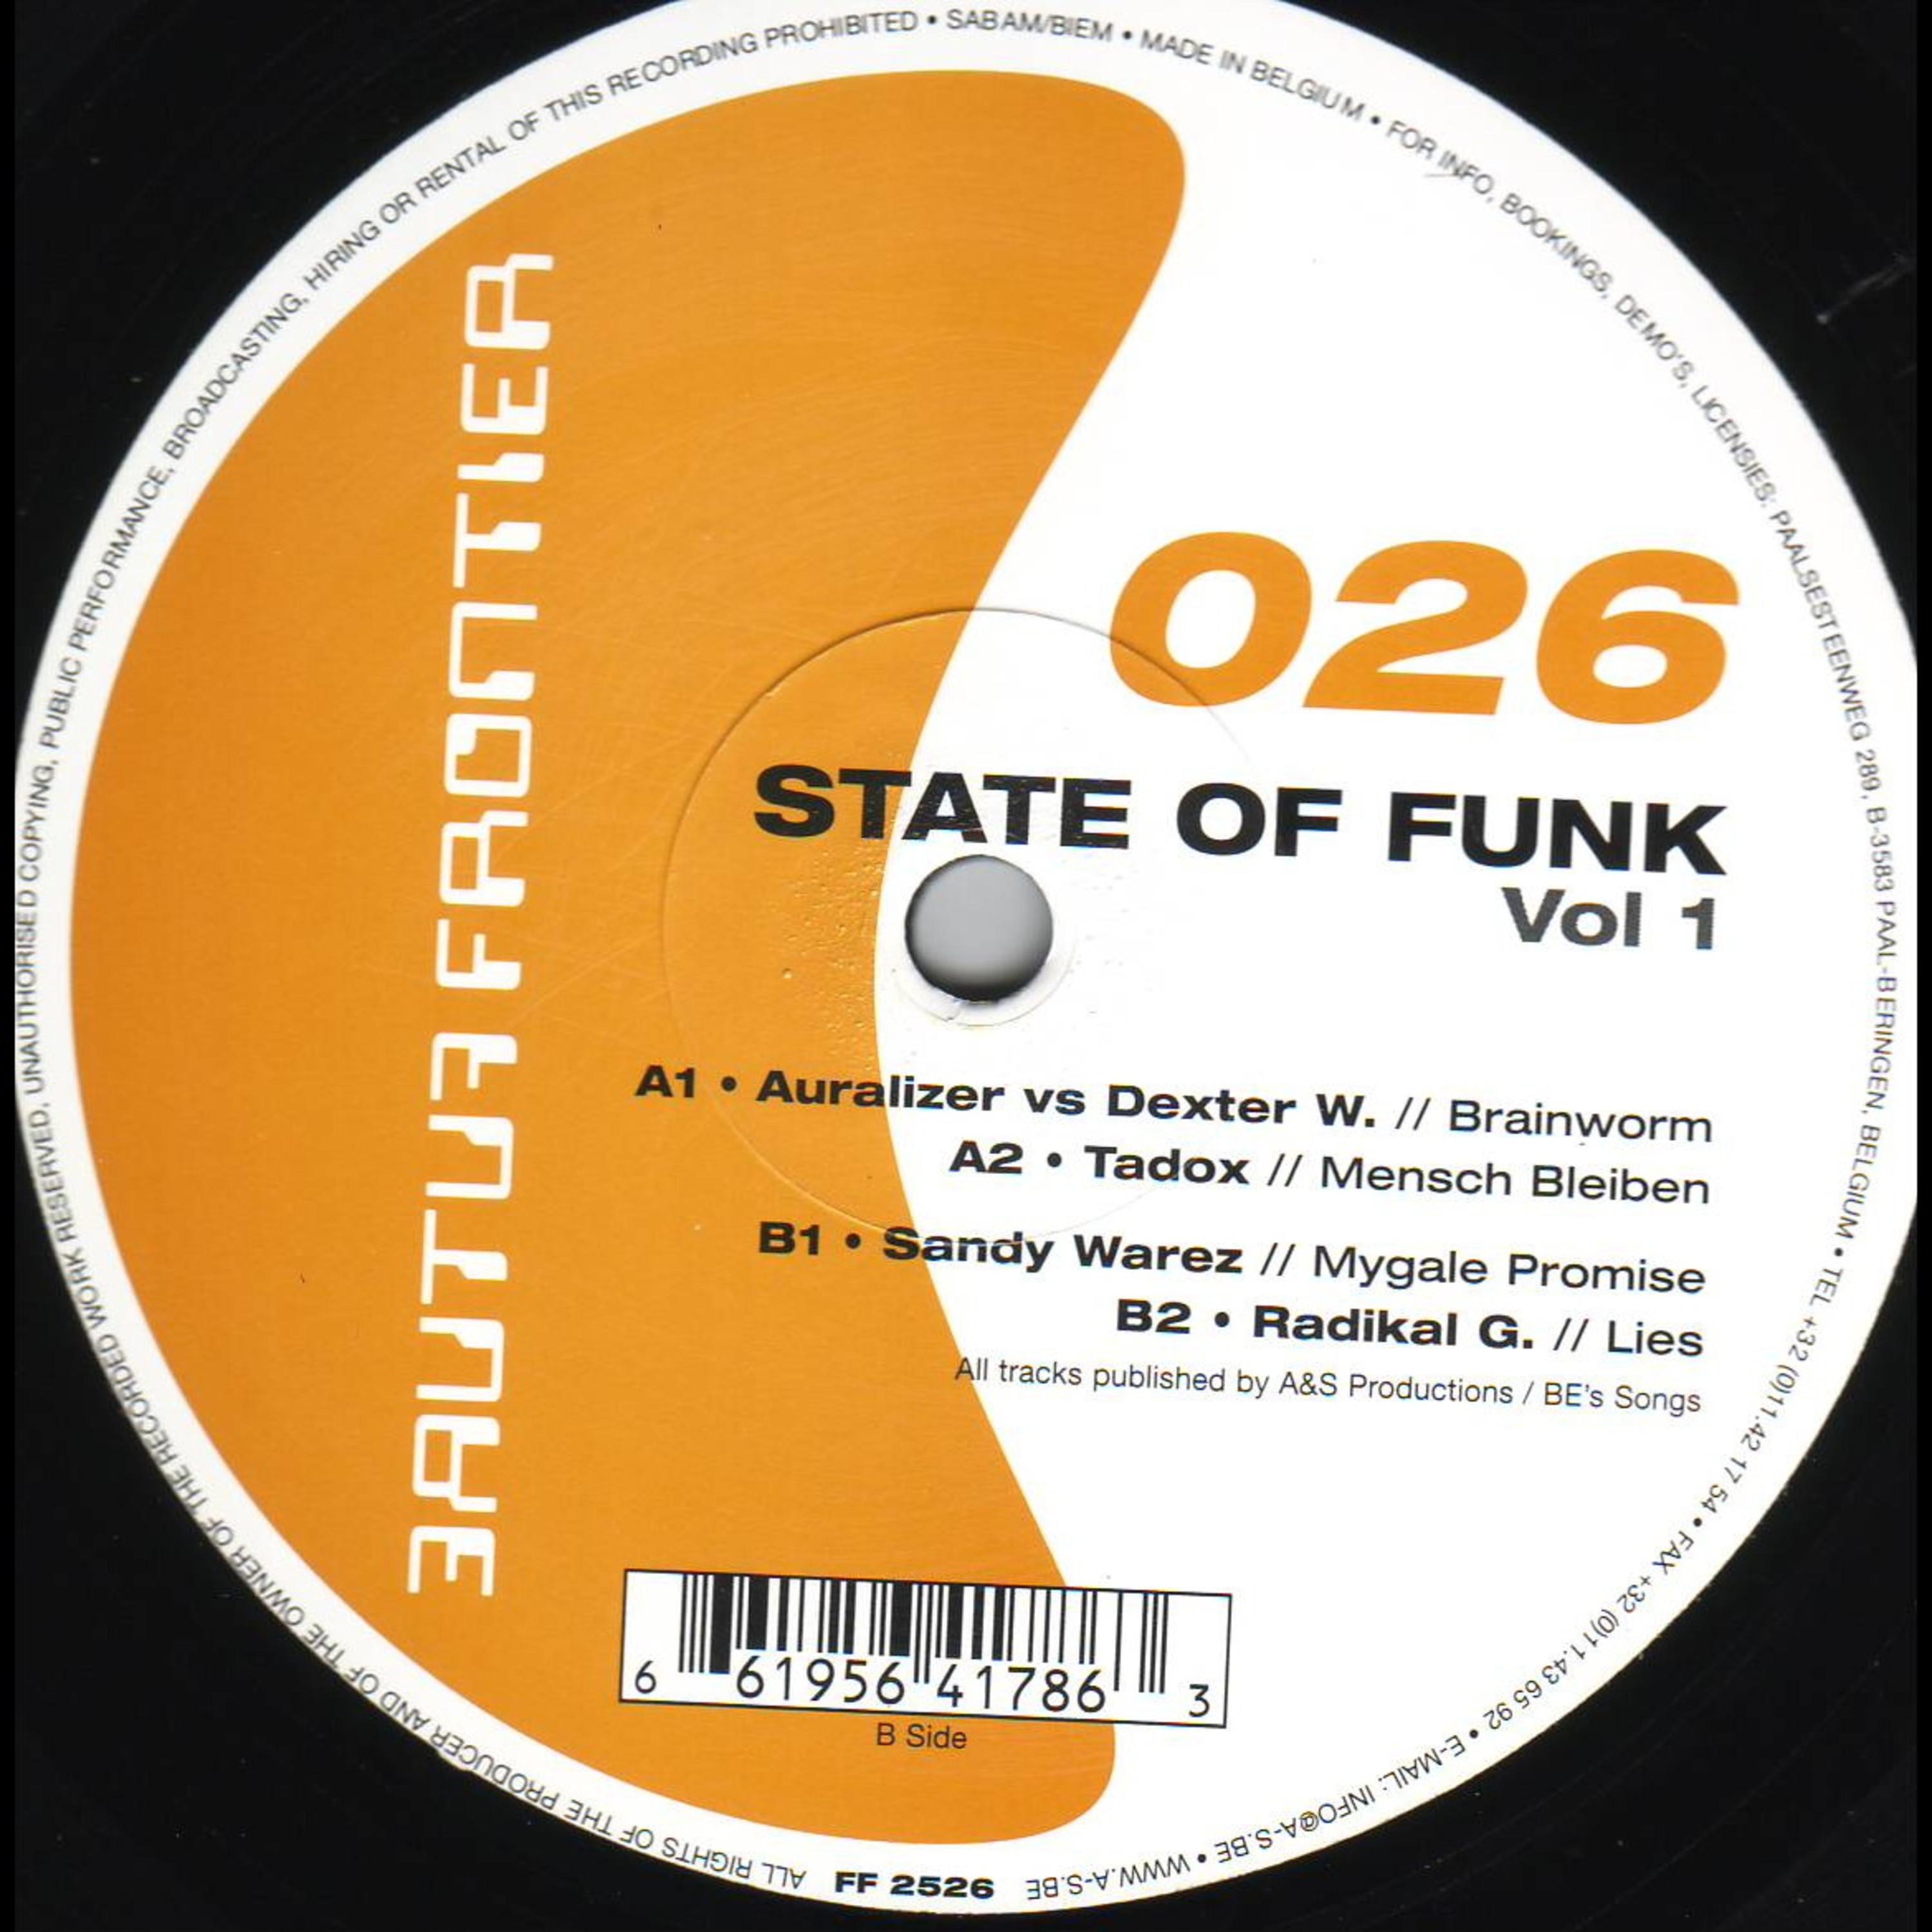 State of Funk Vol. 1